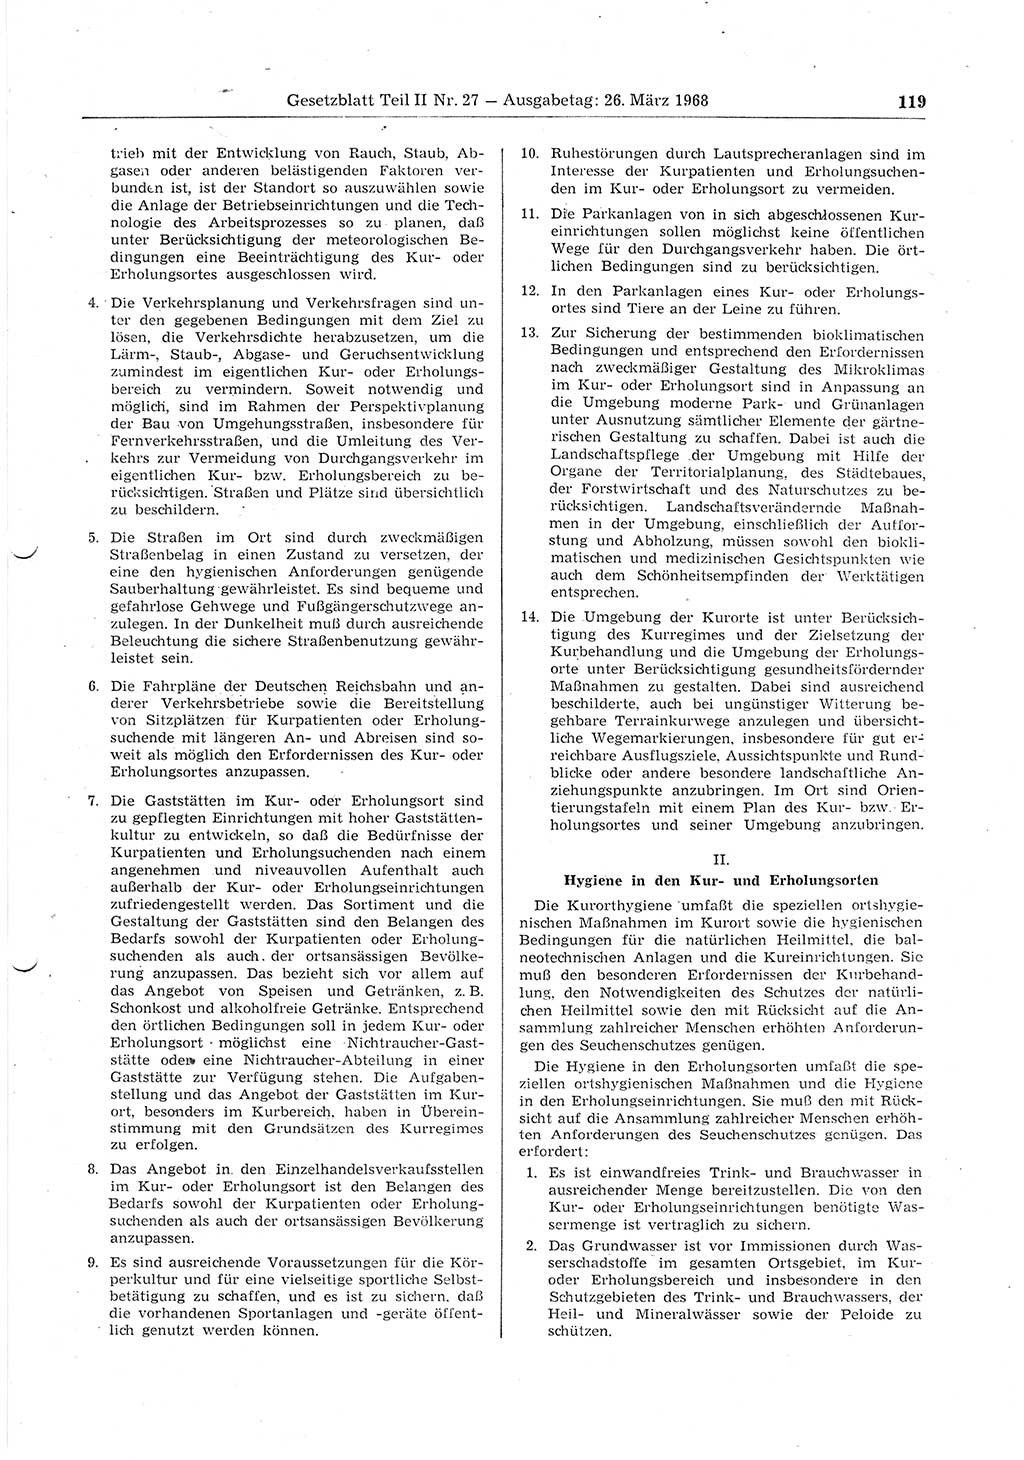 Gesetzblatt (GBl.) der Deutschen Demokratischen Republik (DDR) Teil ⅠⅠ 1968, Seite 119 (GBl. DDR ⅠⅠ 1968, S. 119)